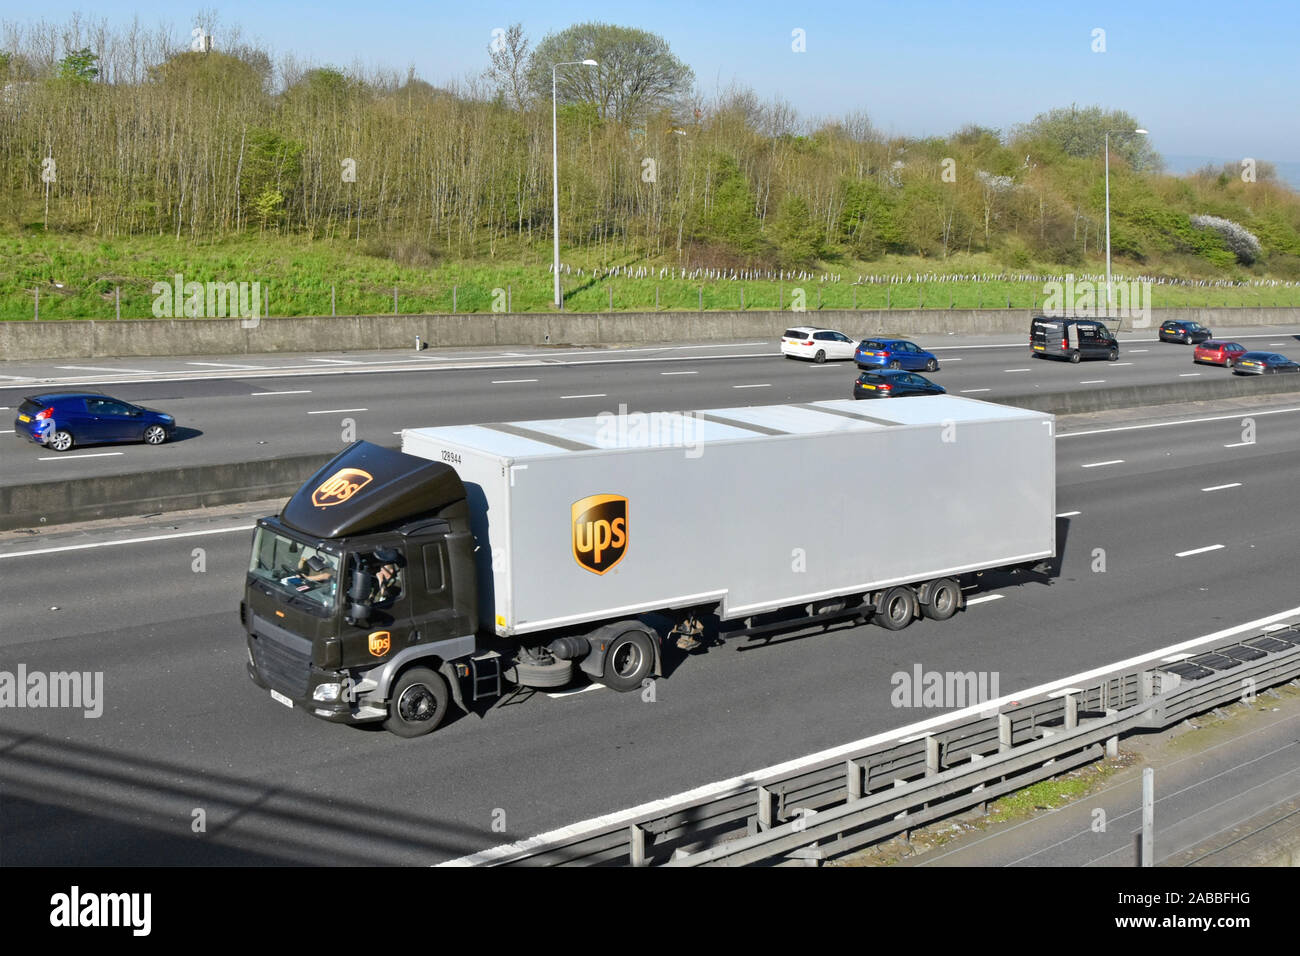 Supply Chain Logistic Transport durch United Parcel Service UPS Pakete Marke Logo auf Lkw Lkw Lkw Seite & artikuliert trailer Englisch Autobahn UK Stockfoto